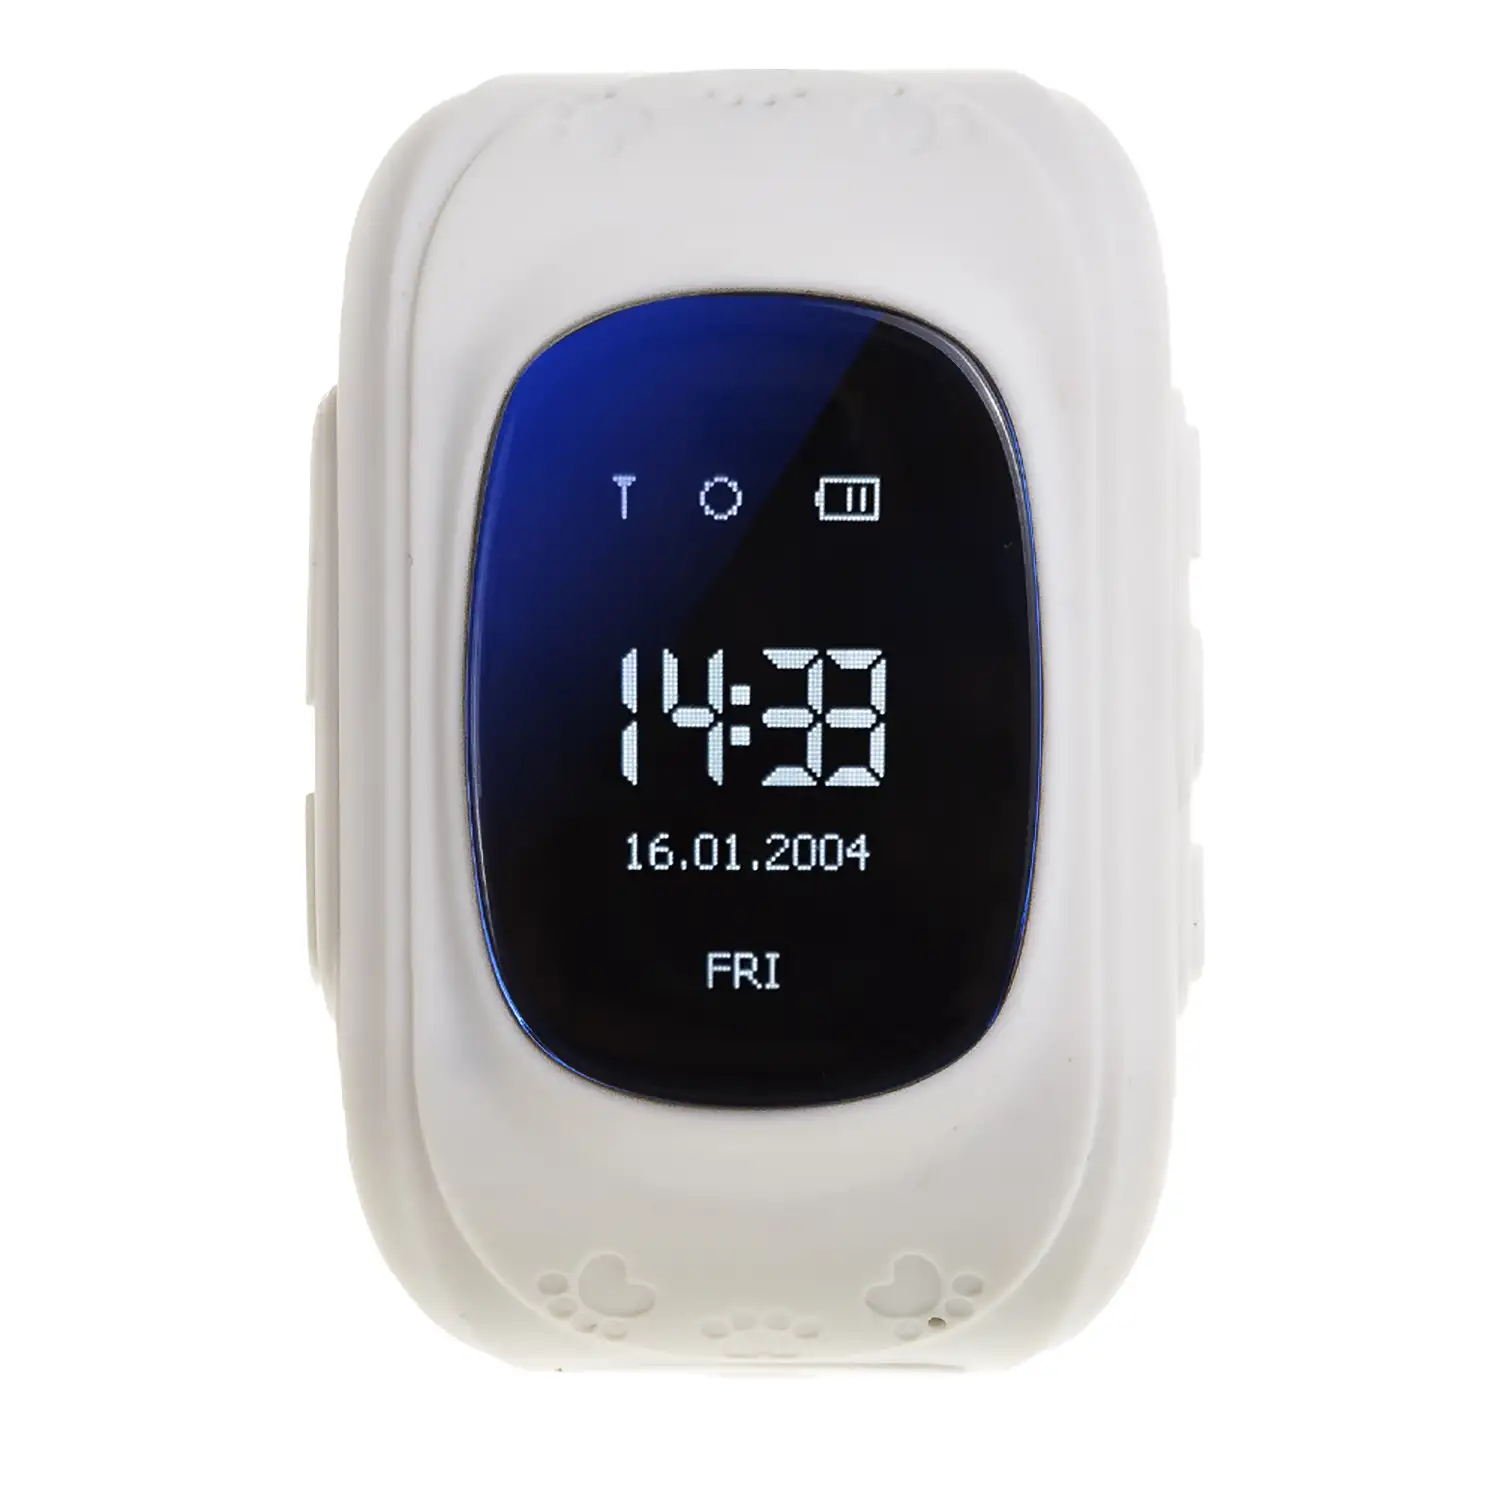 Smartwatch GPS Q50 especial para niños con función de rastreo llamadas SOS  y recepción de llamada